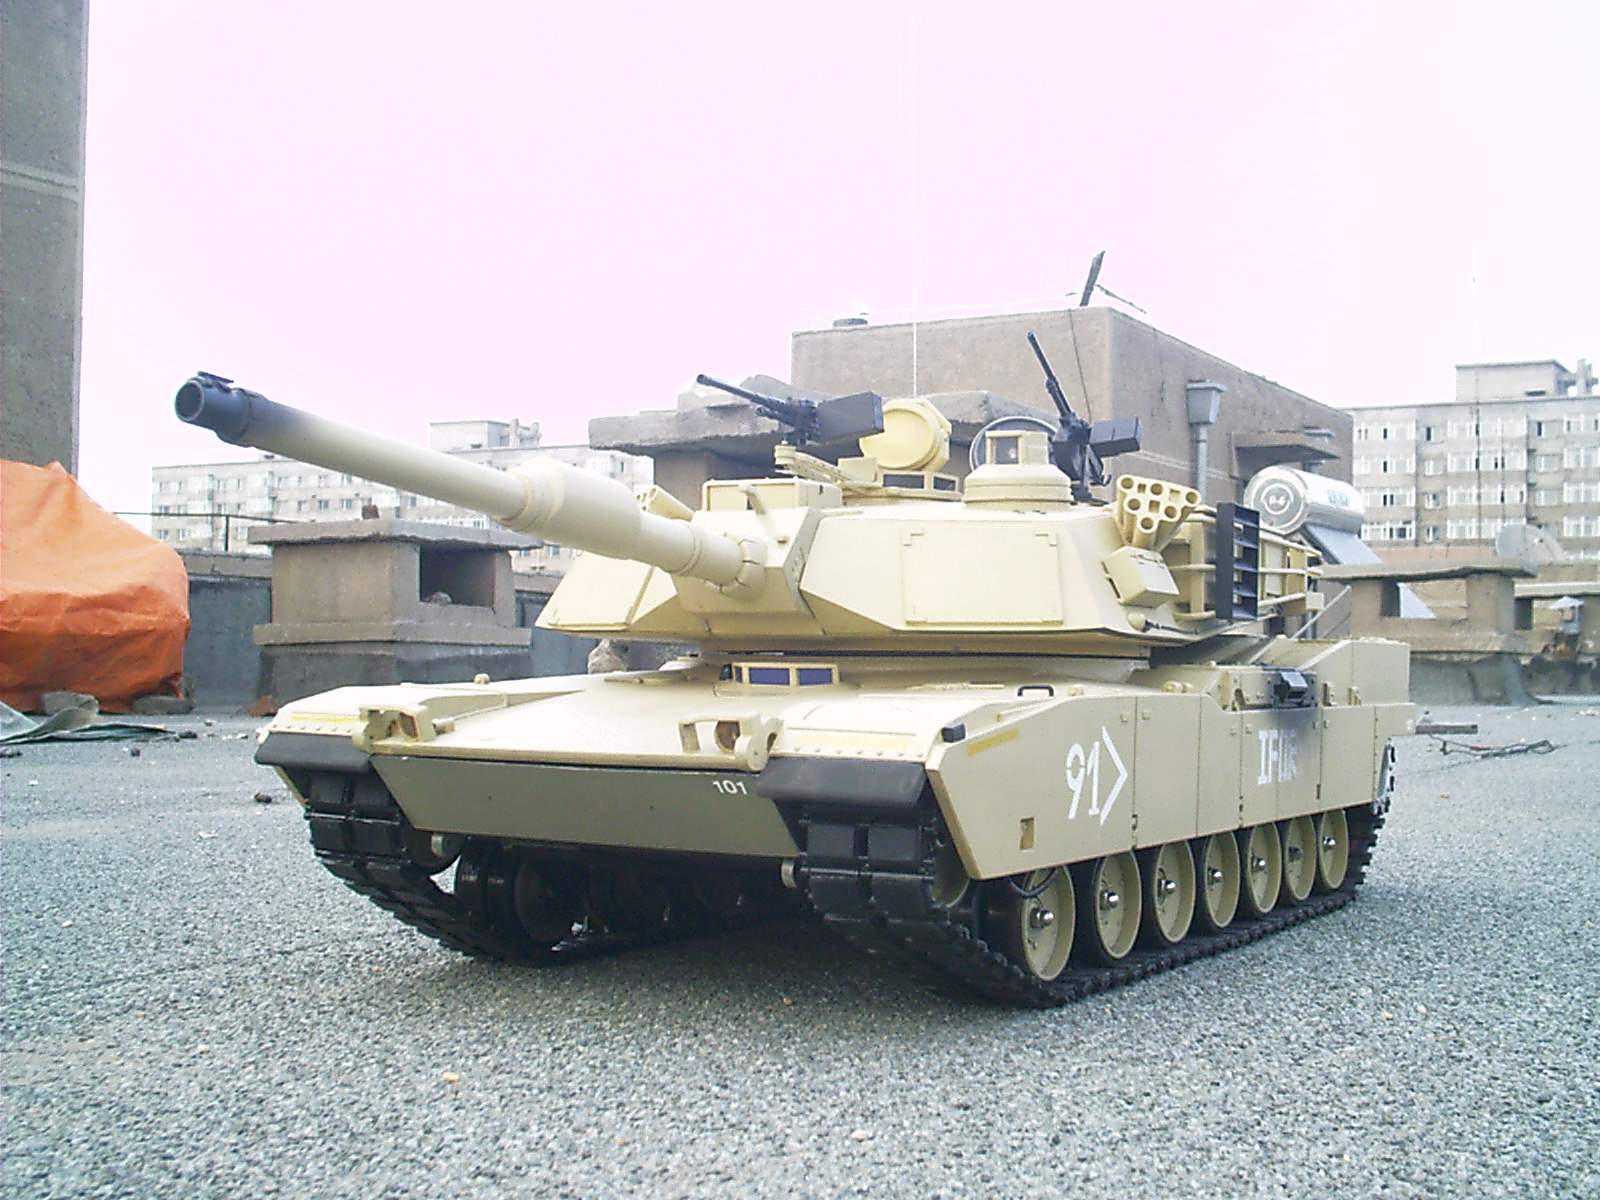 仿真坦克模型   全电动 仿真大炮模型,战车模型制作 作者:模鬼将军 7560 